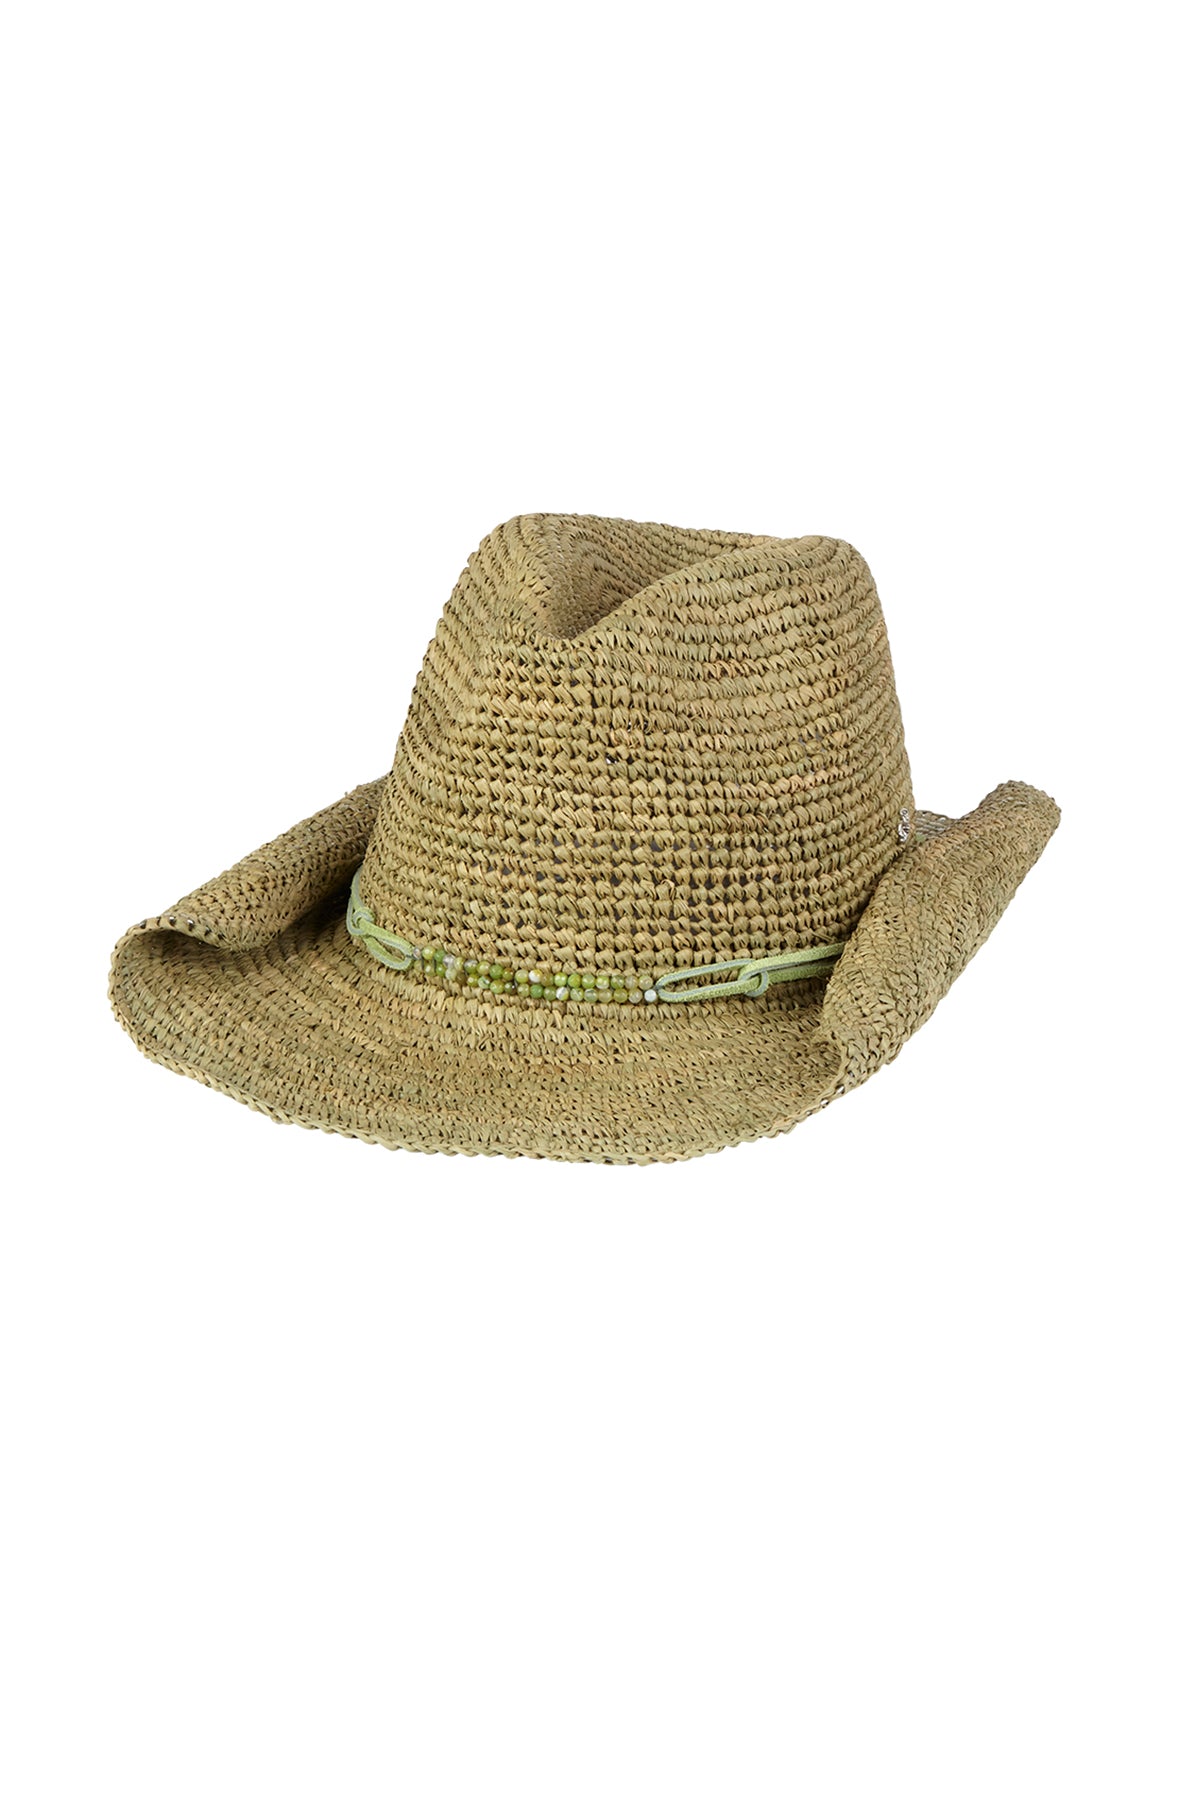 Florabella Lai Cowboy Hat Chartreuse